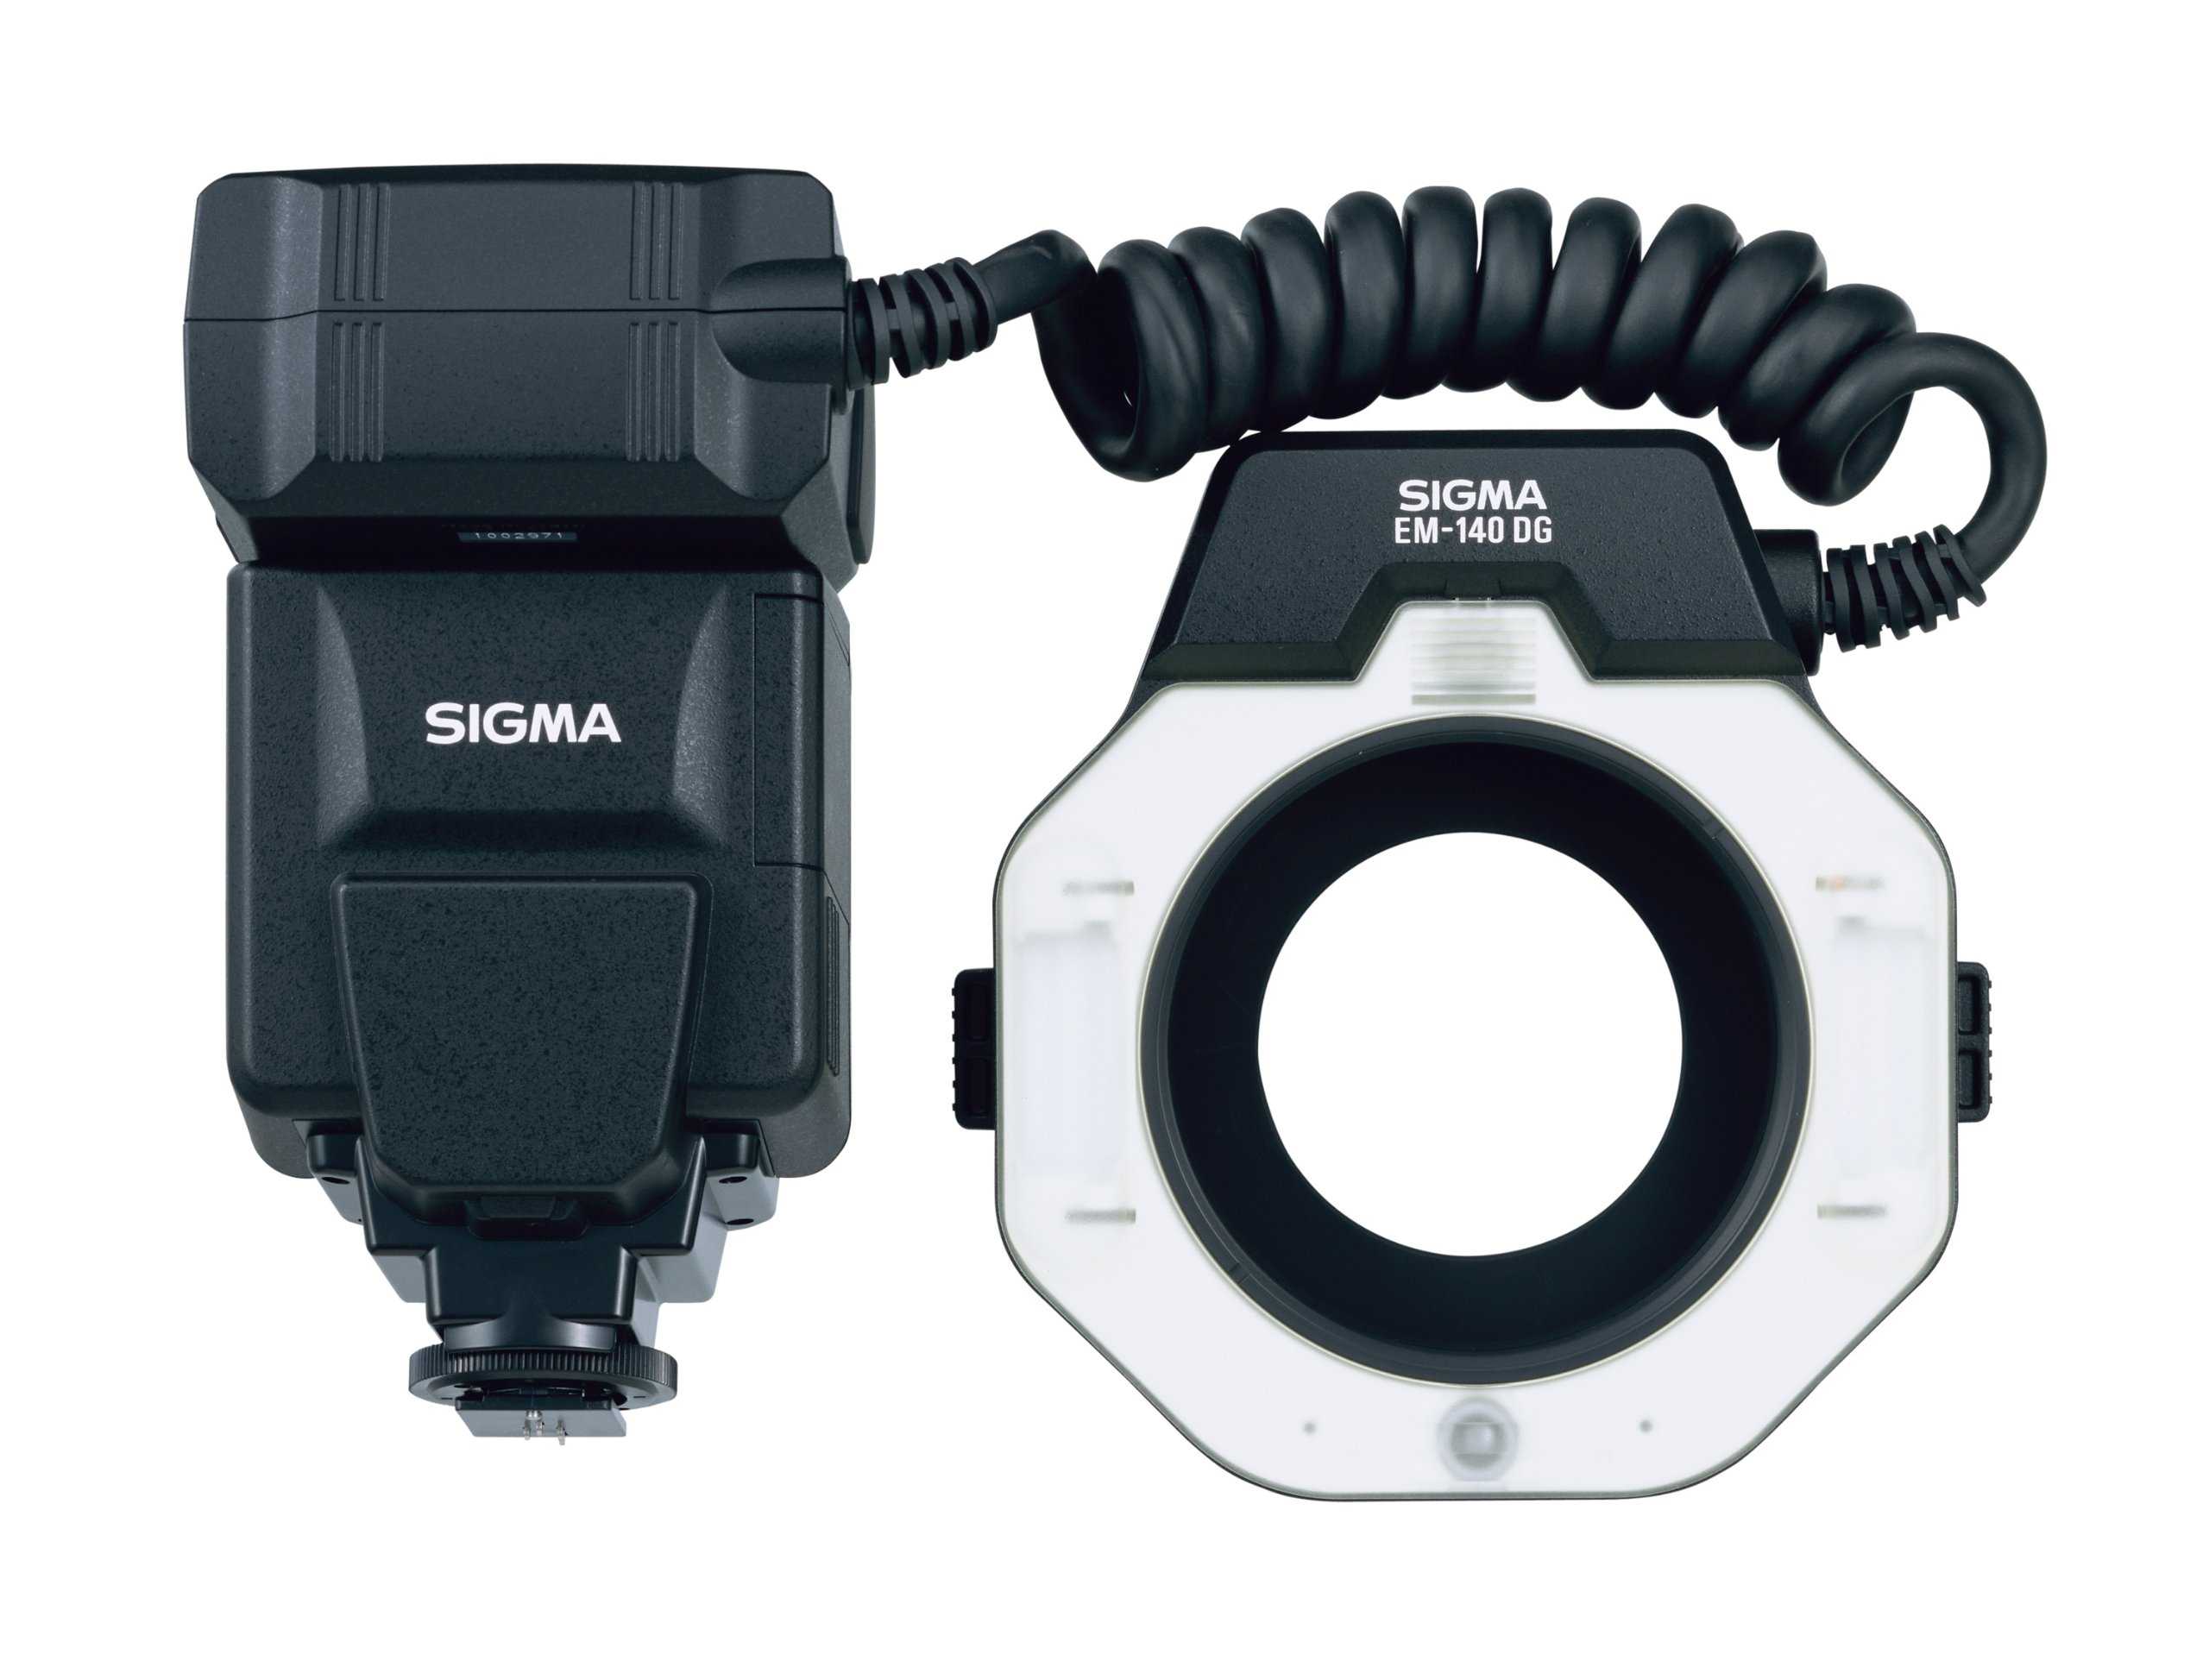 Фотовспышка Sigma EM 140 DG Macro for Nikon - подробные характеристики обзоры видео фото Цены в интернет-магазинах где можно купить фотовспышку Sigma EM 140 DG Macro for Nikon